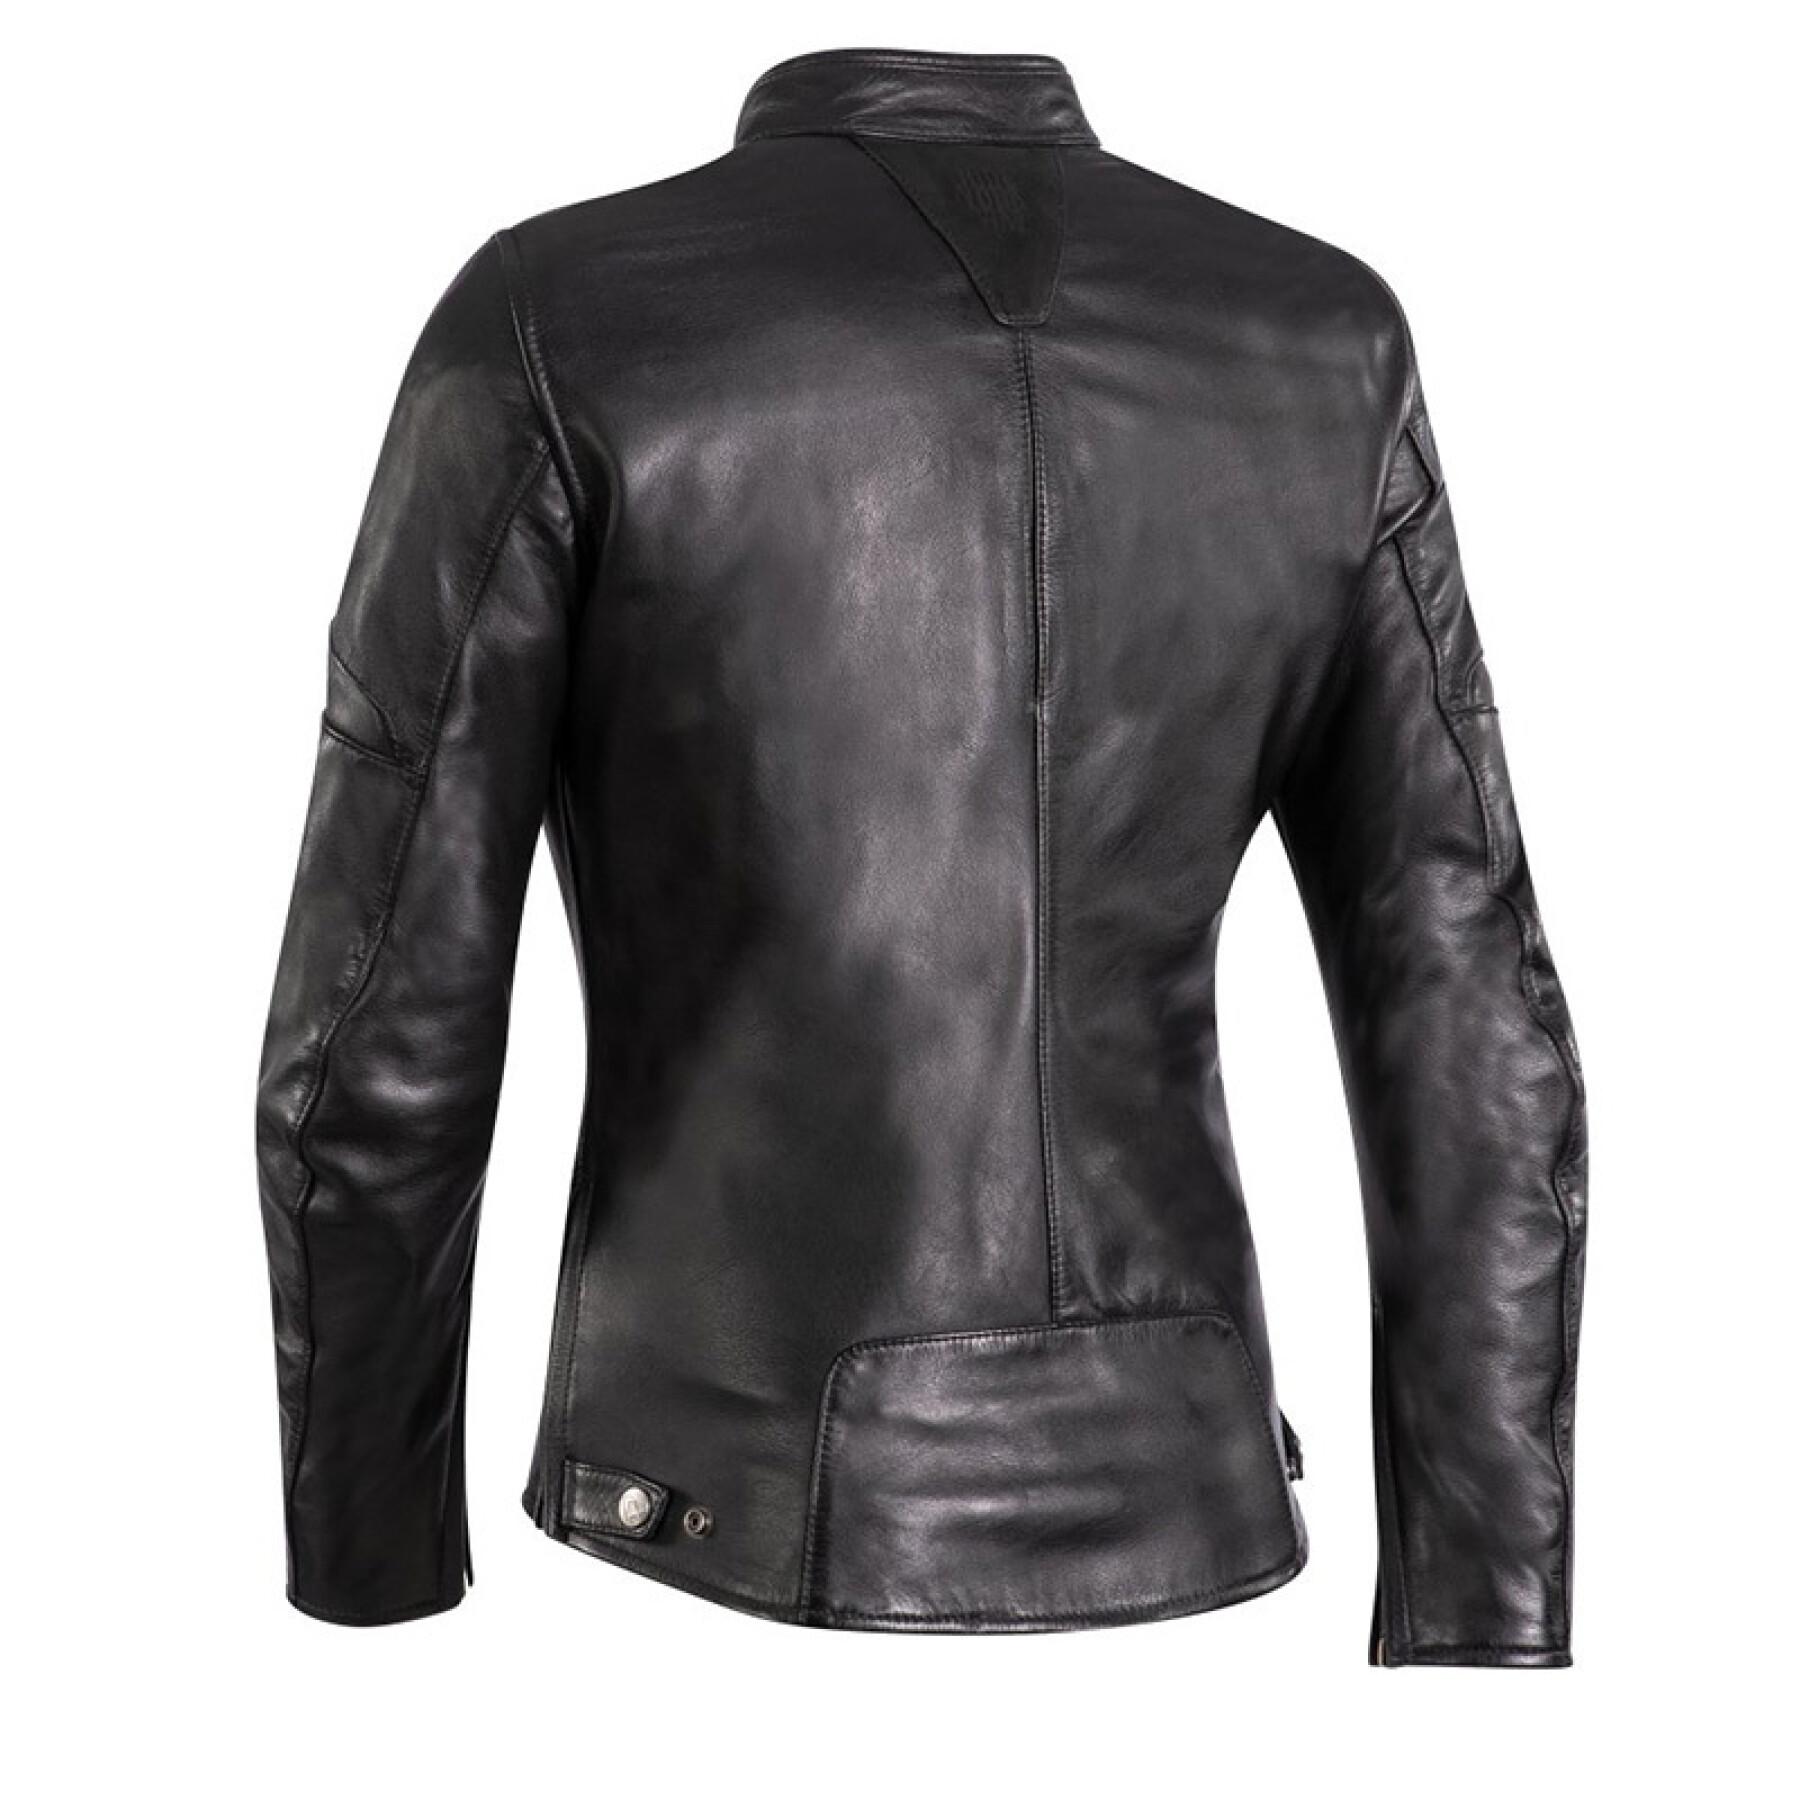 Leather jacket motorcycle woman Ixon cranky